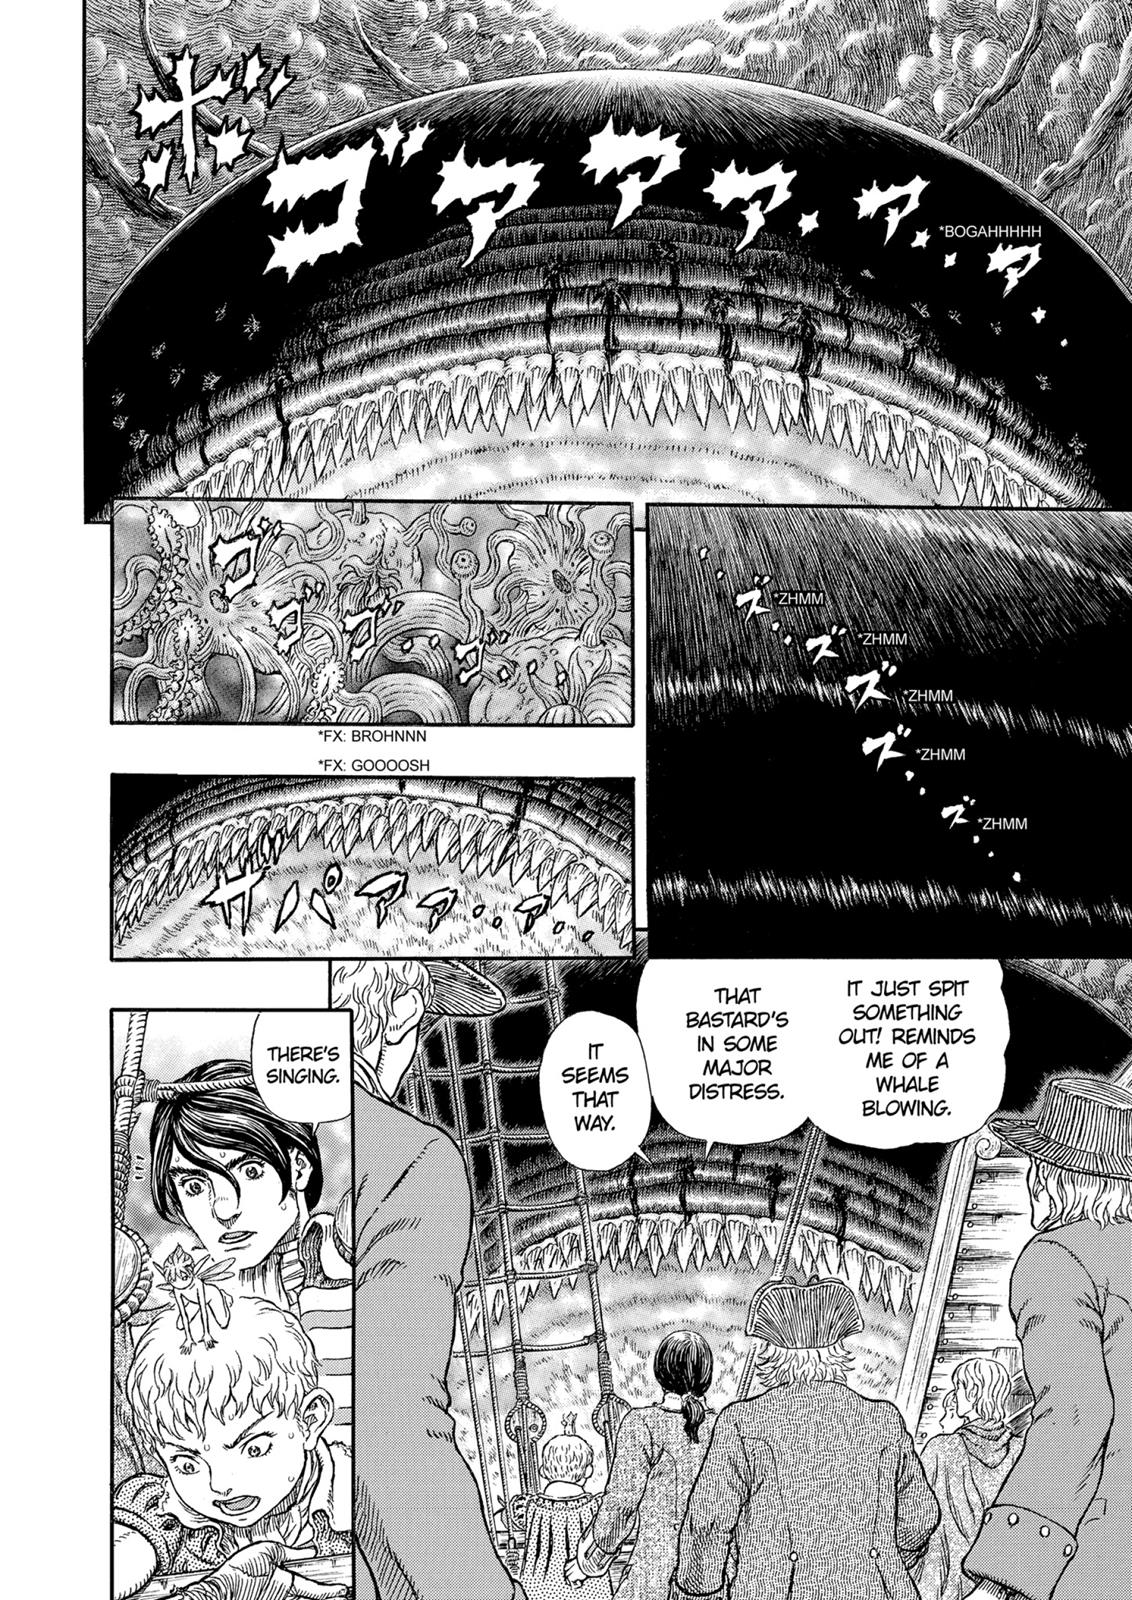 Berserk Manga Chapter 326 image 03